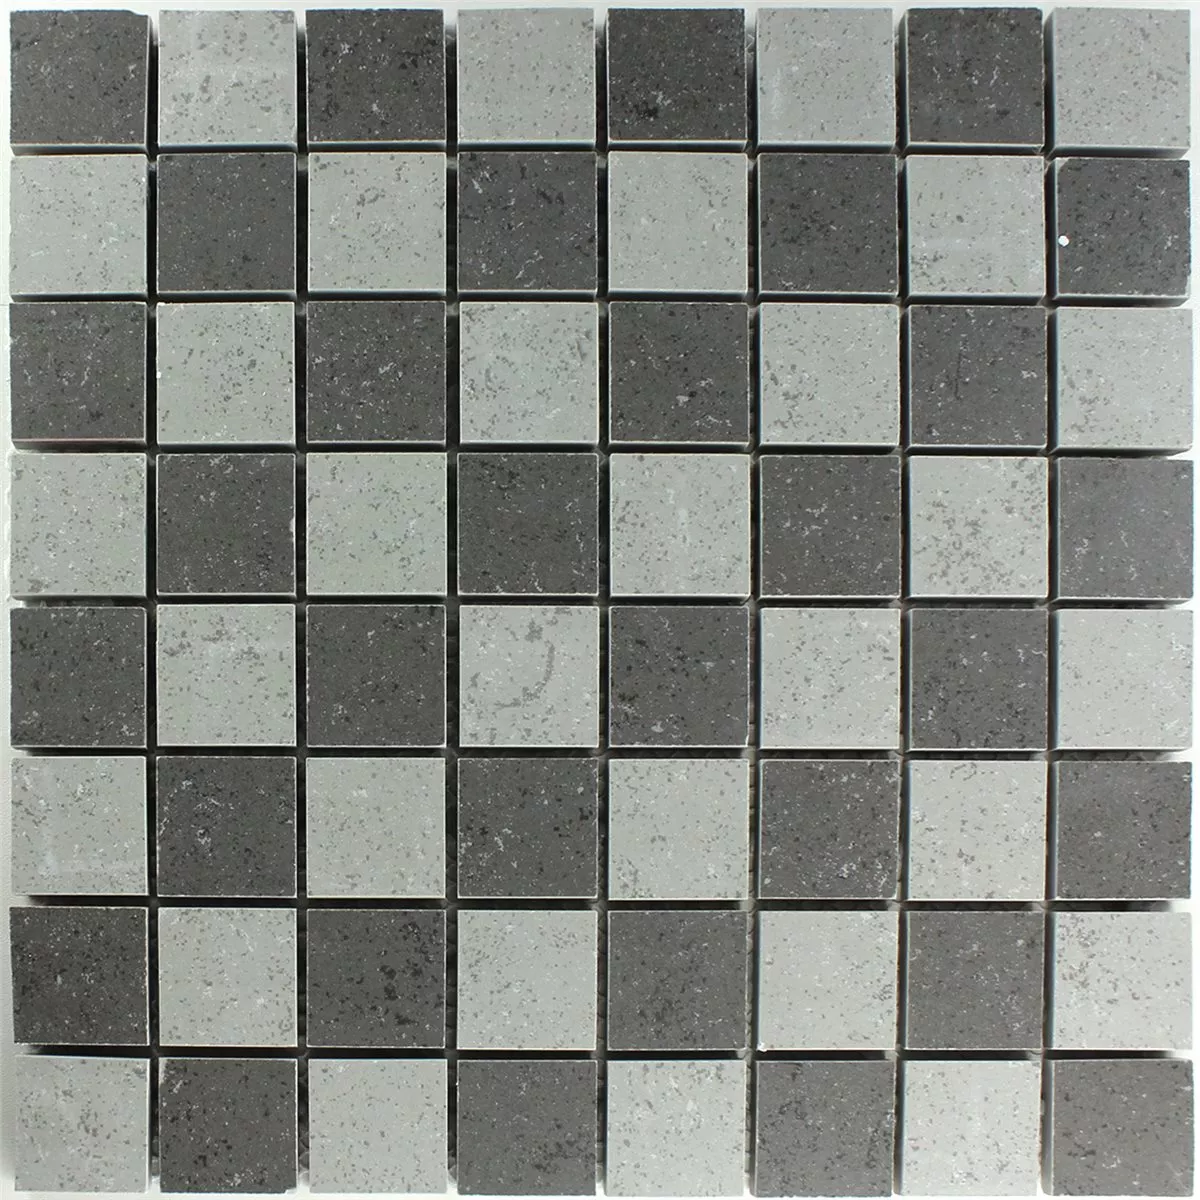 Mosaic Tiles Chess Board Grey Mat